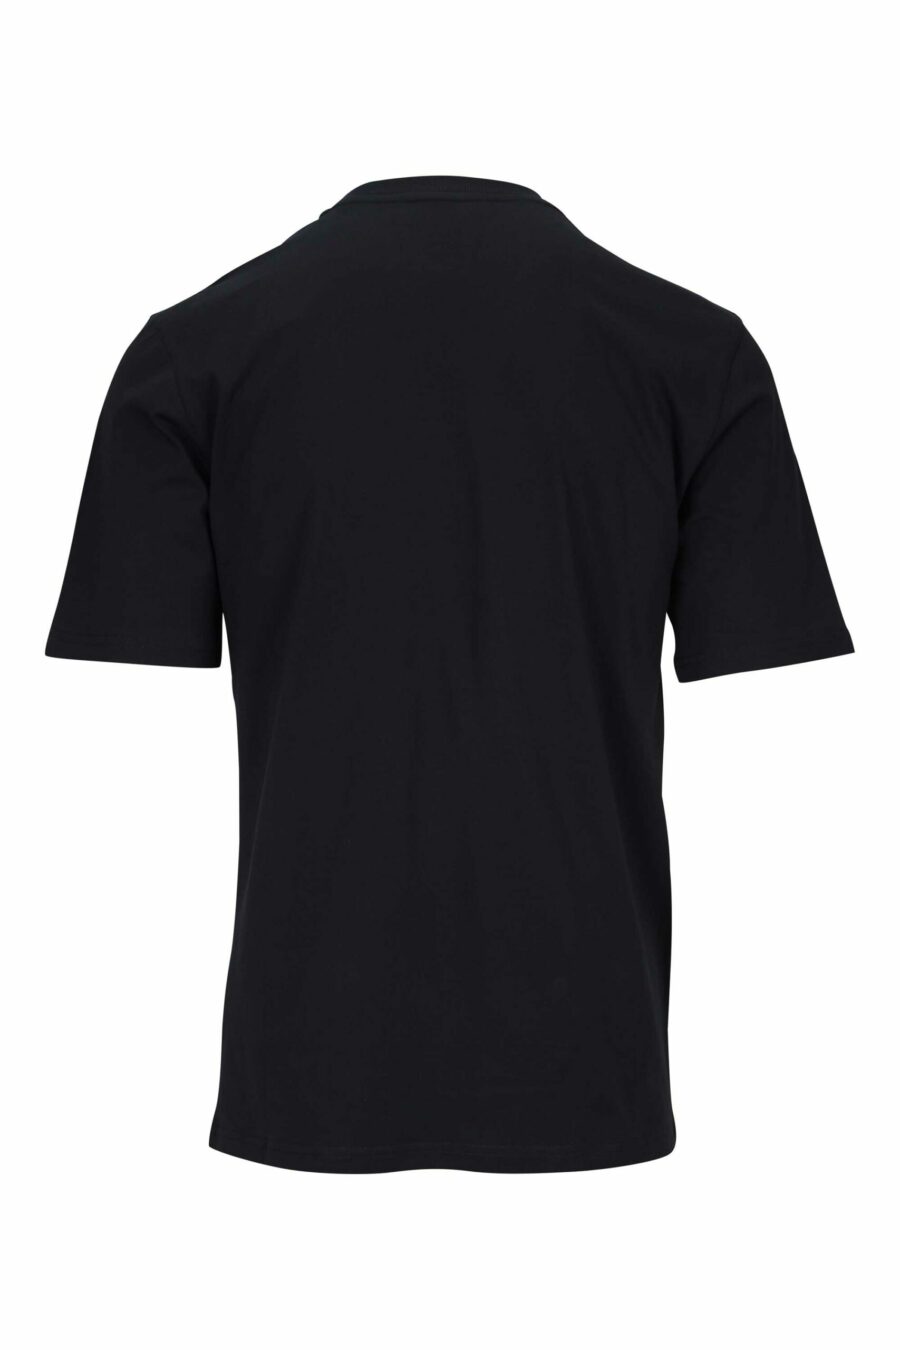 Camiseta negra con maxilogo oso en puntos monocromático - 667113455754 1 scaled